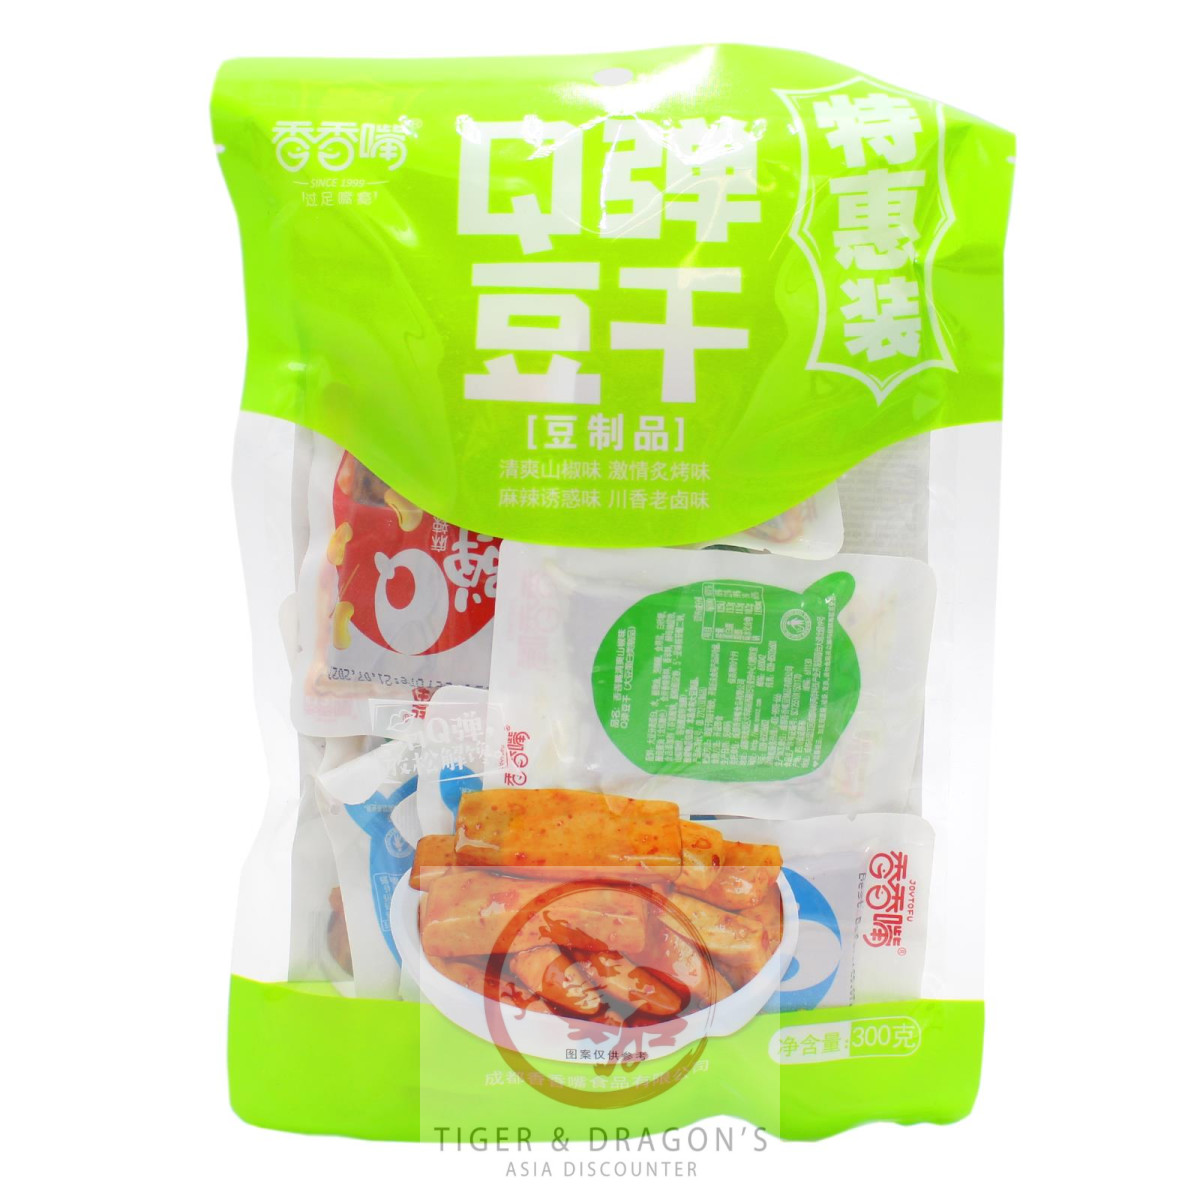 Joytofu Tofu Snack gewürzt 300g